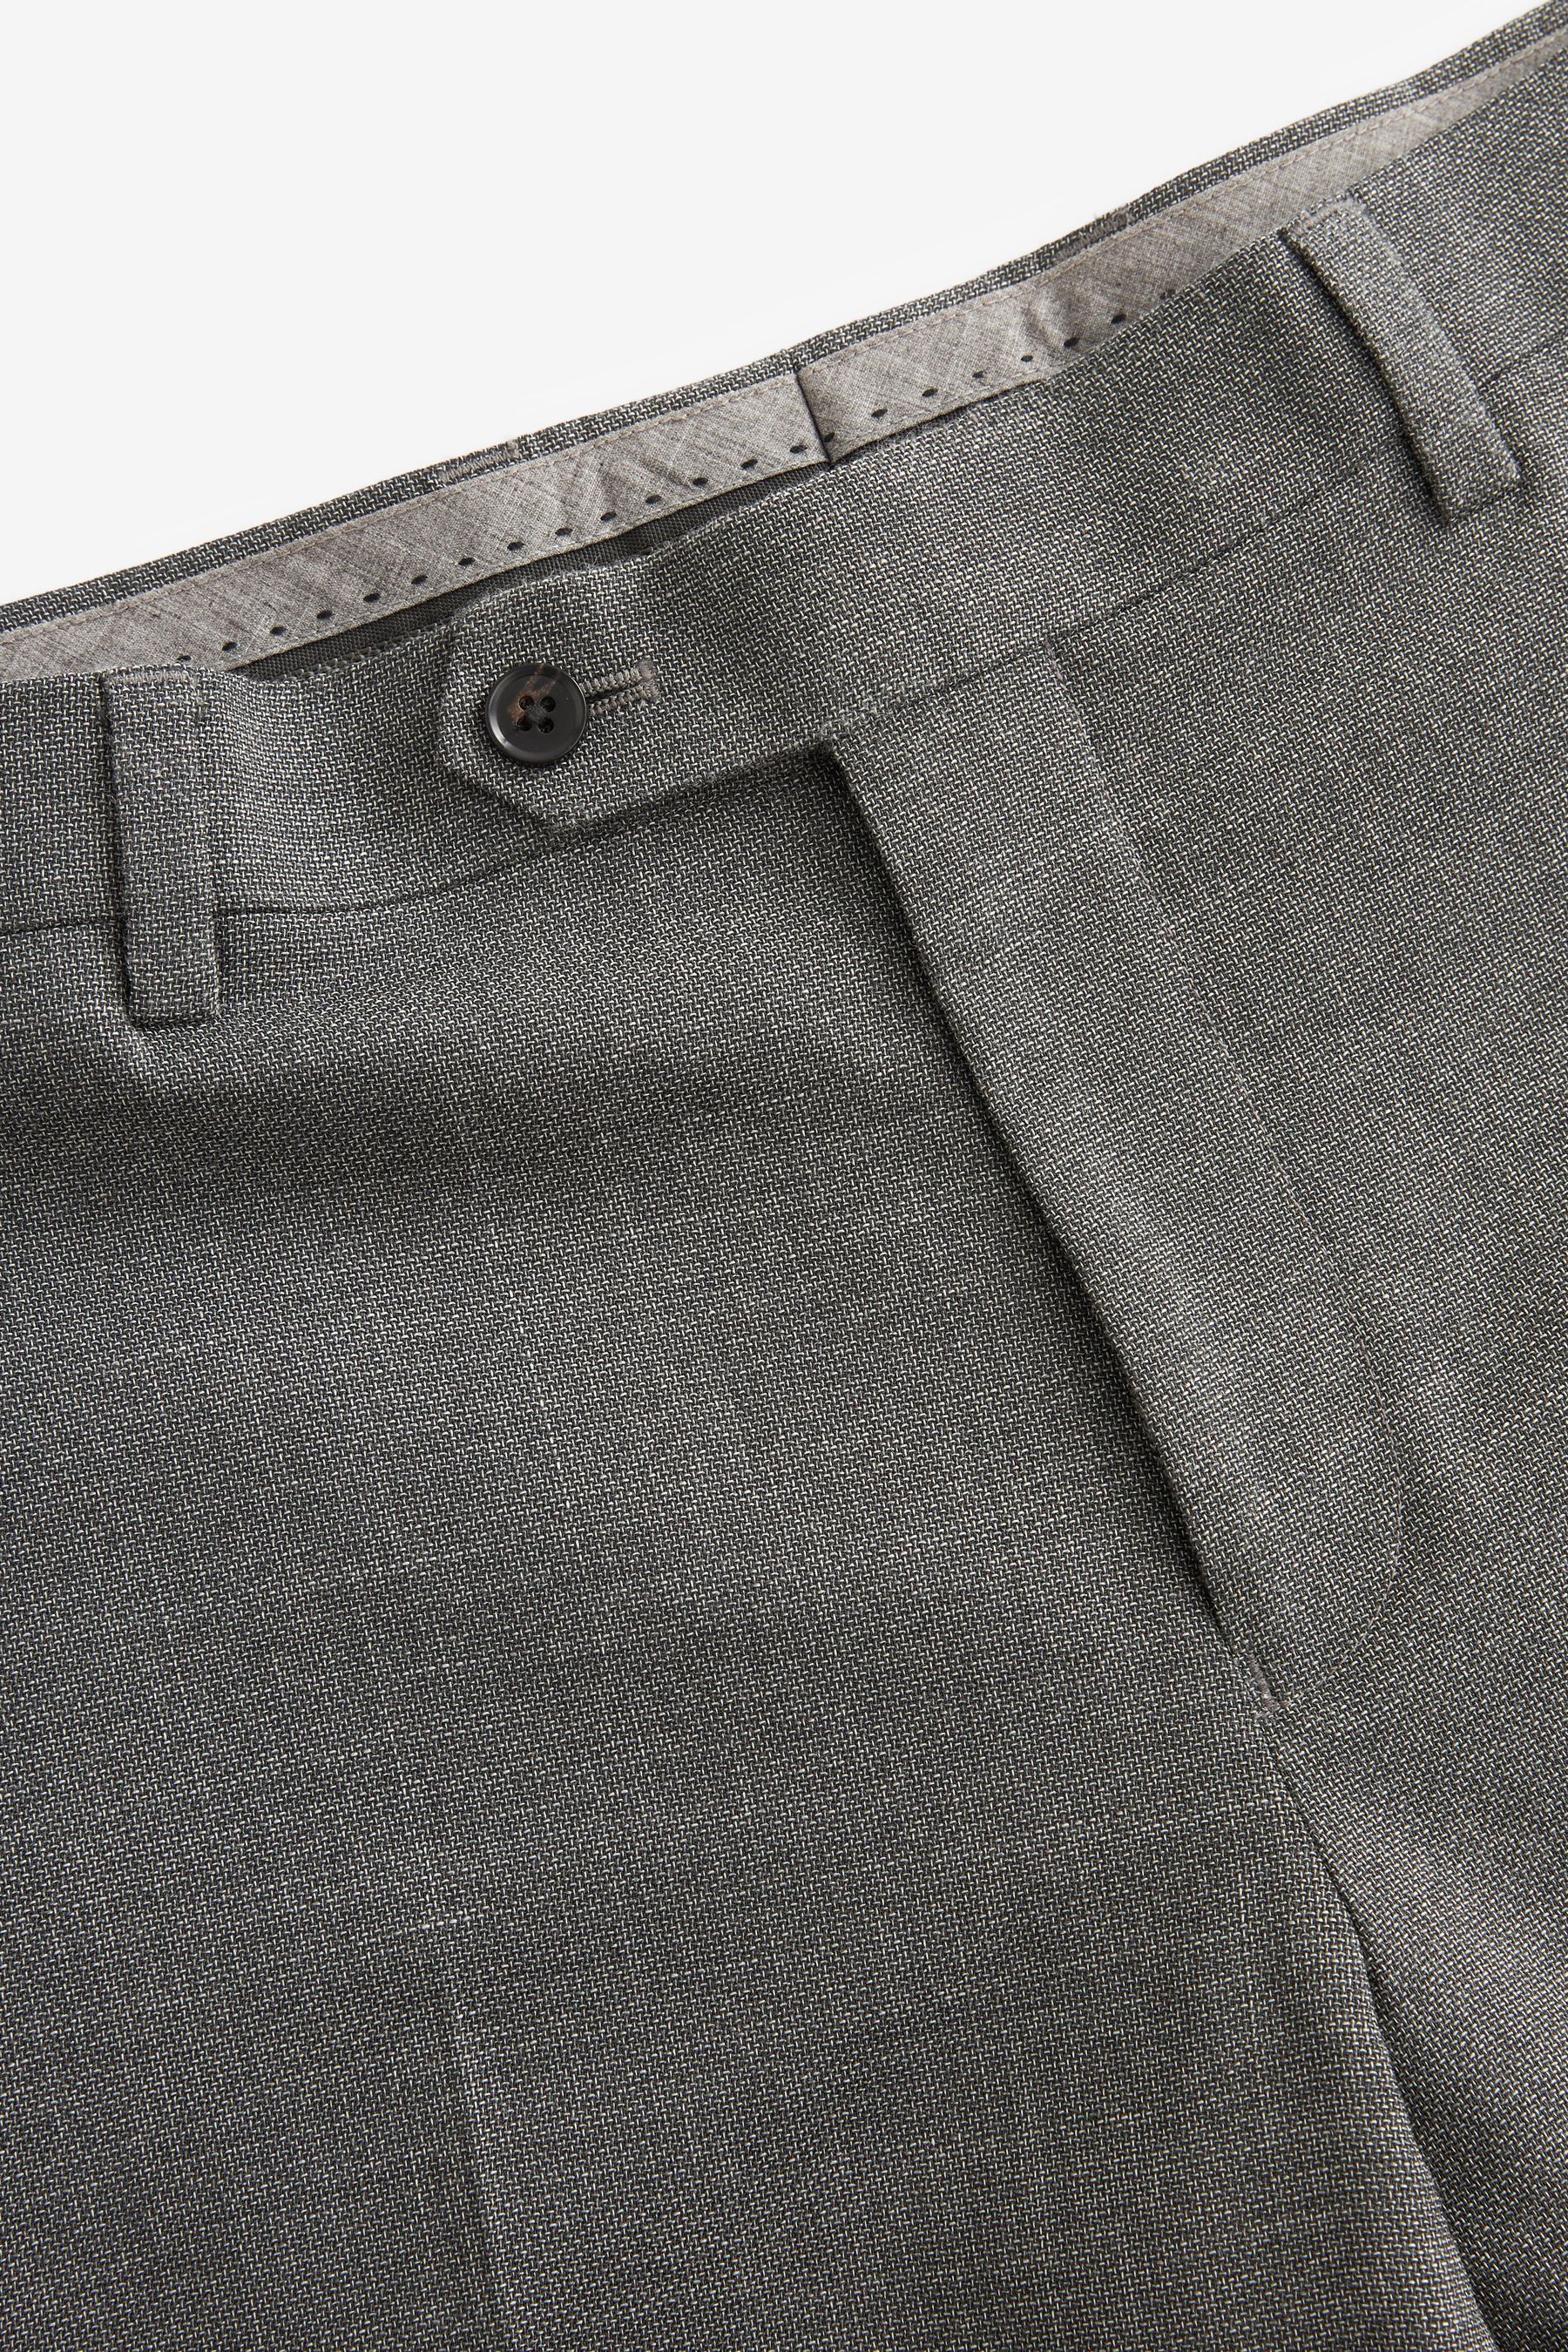 Buy Grey Slim Fit Signature Marzotto Italian Fabric Textured Suit ...